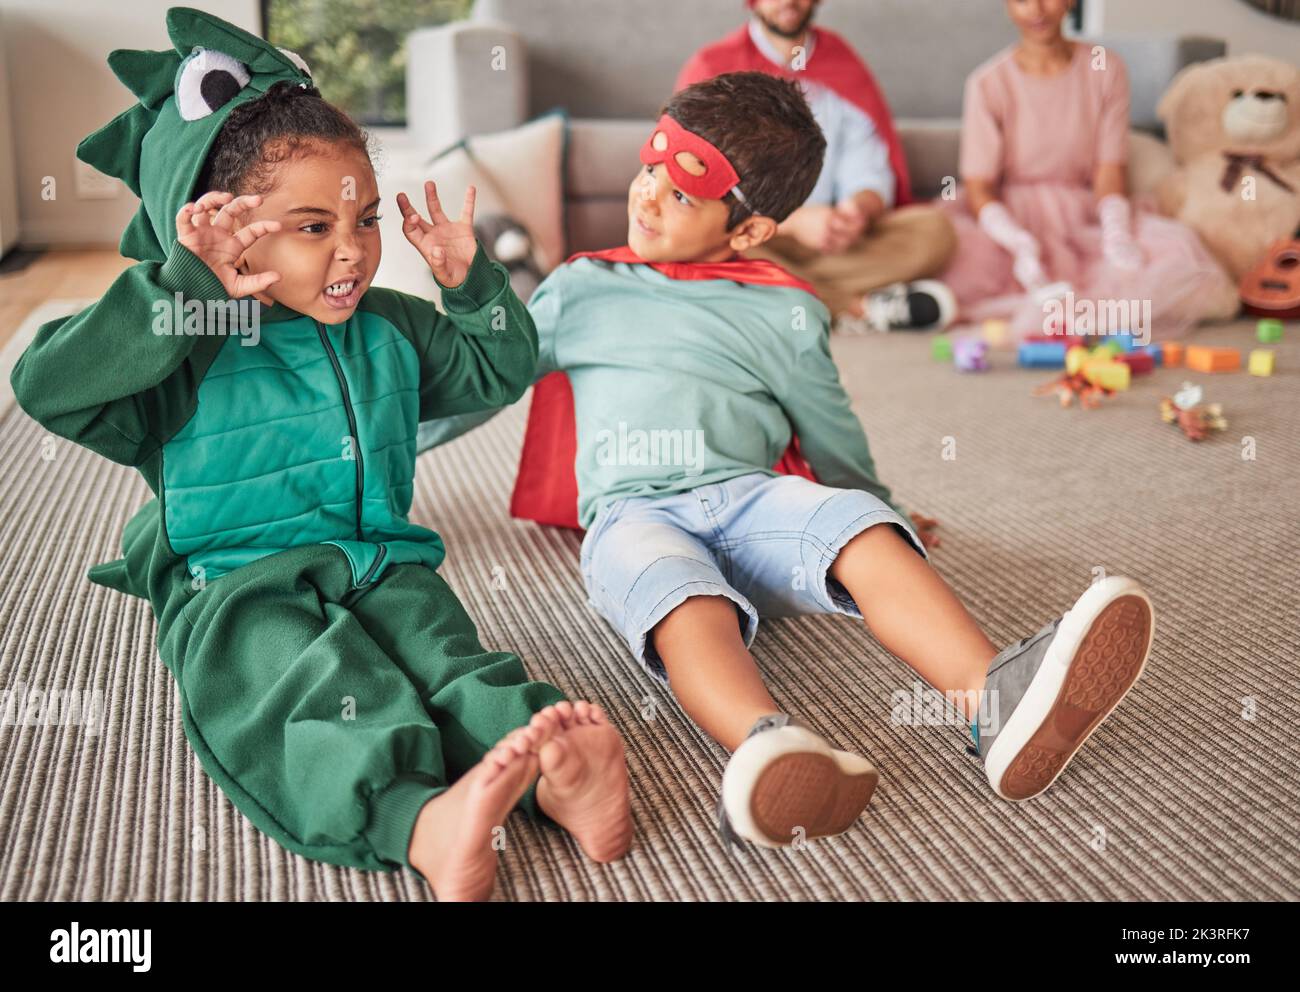 Familie, halloween und Kinder, die in Kostümen auf einem Boden im Wohnzimmer spielen, Spaß haben und kreativ sein. Superhelden, Dinosaurier und kreative Kinder Stockfoto